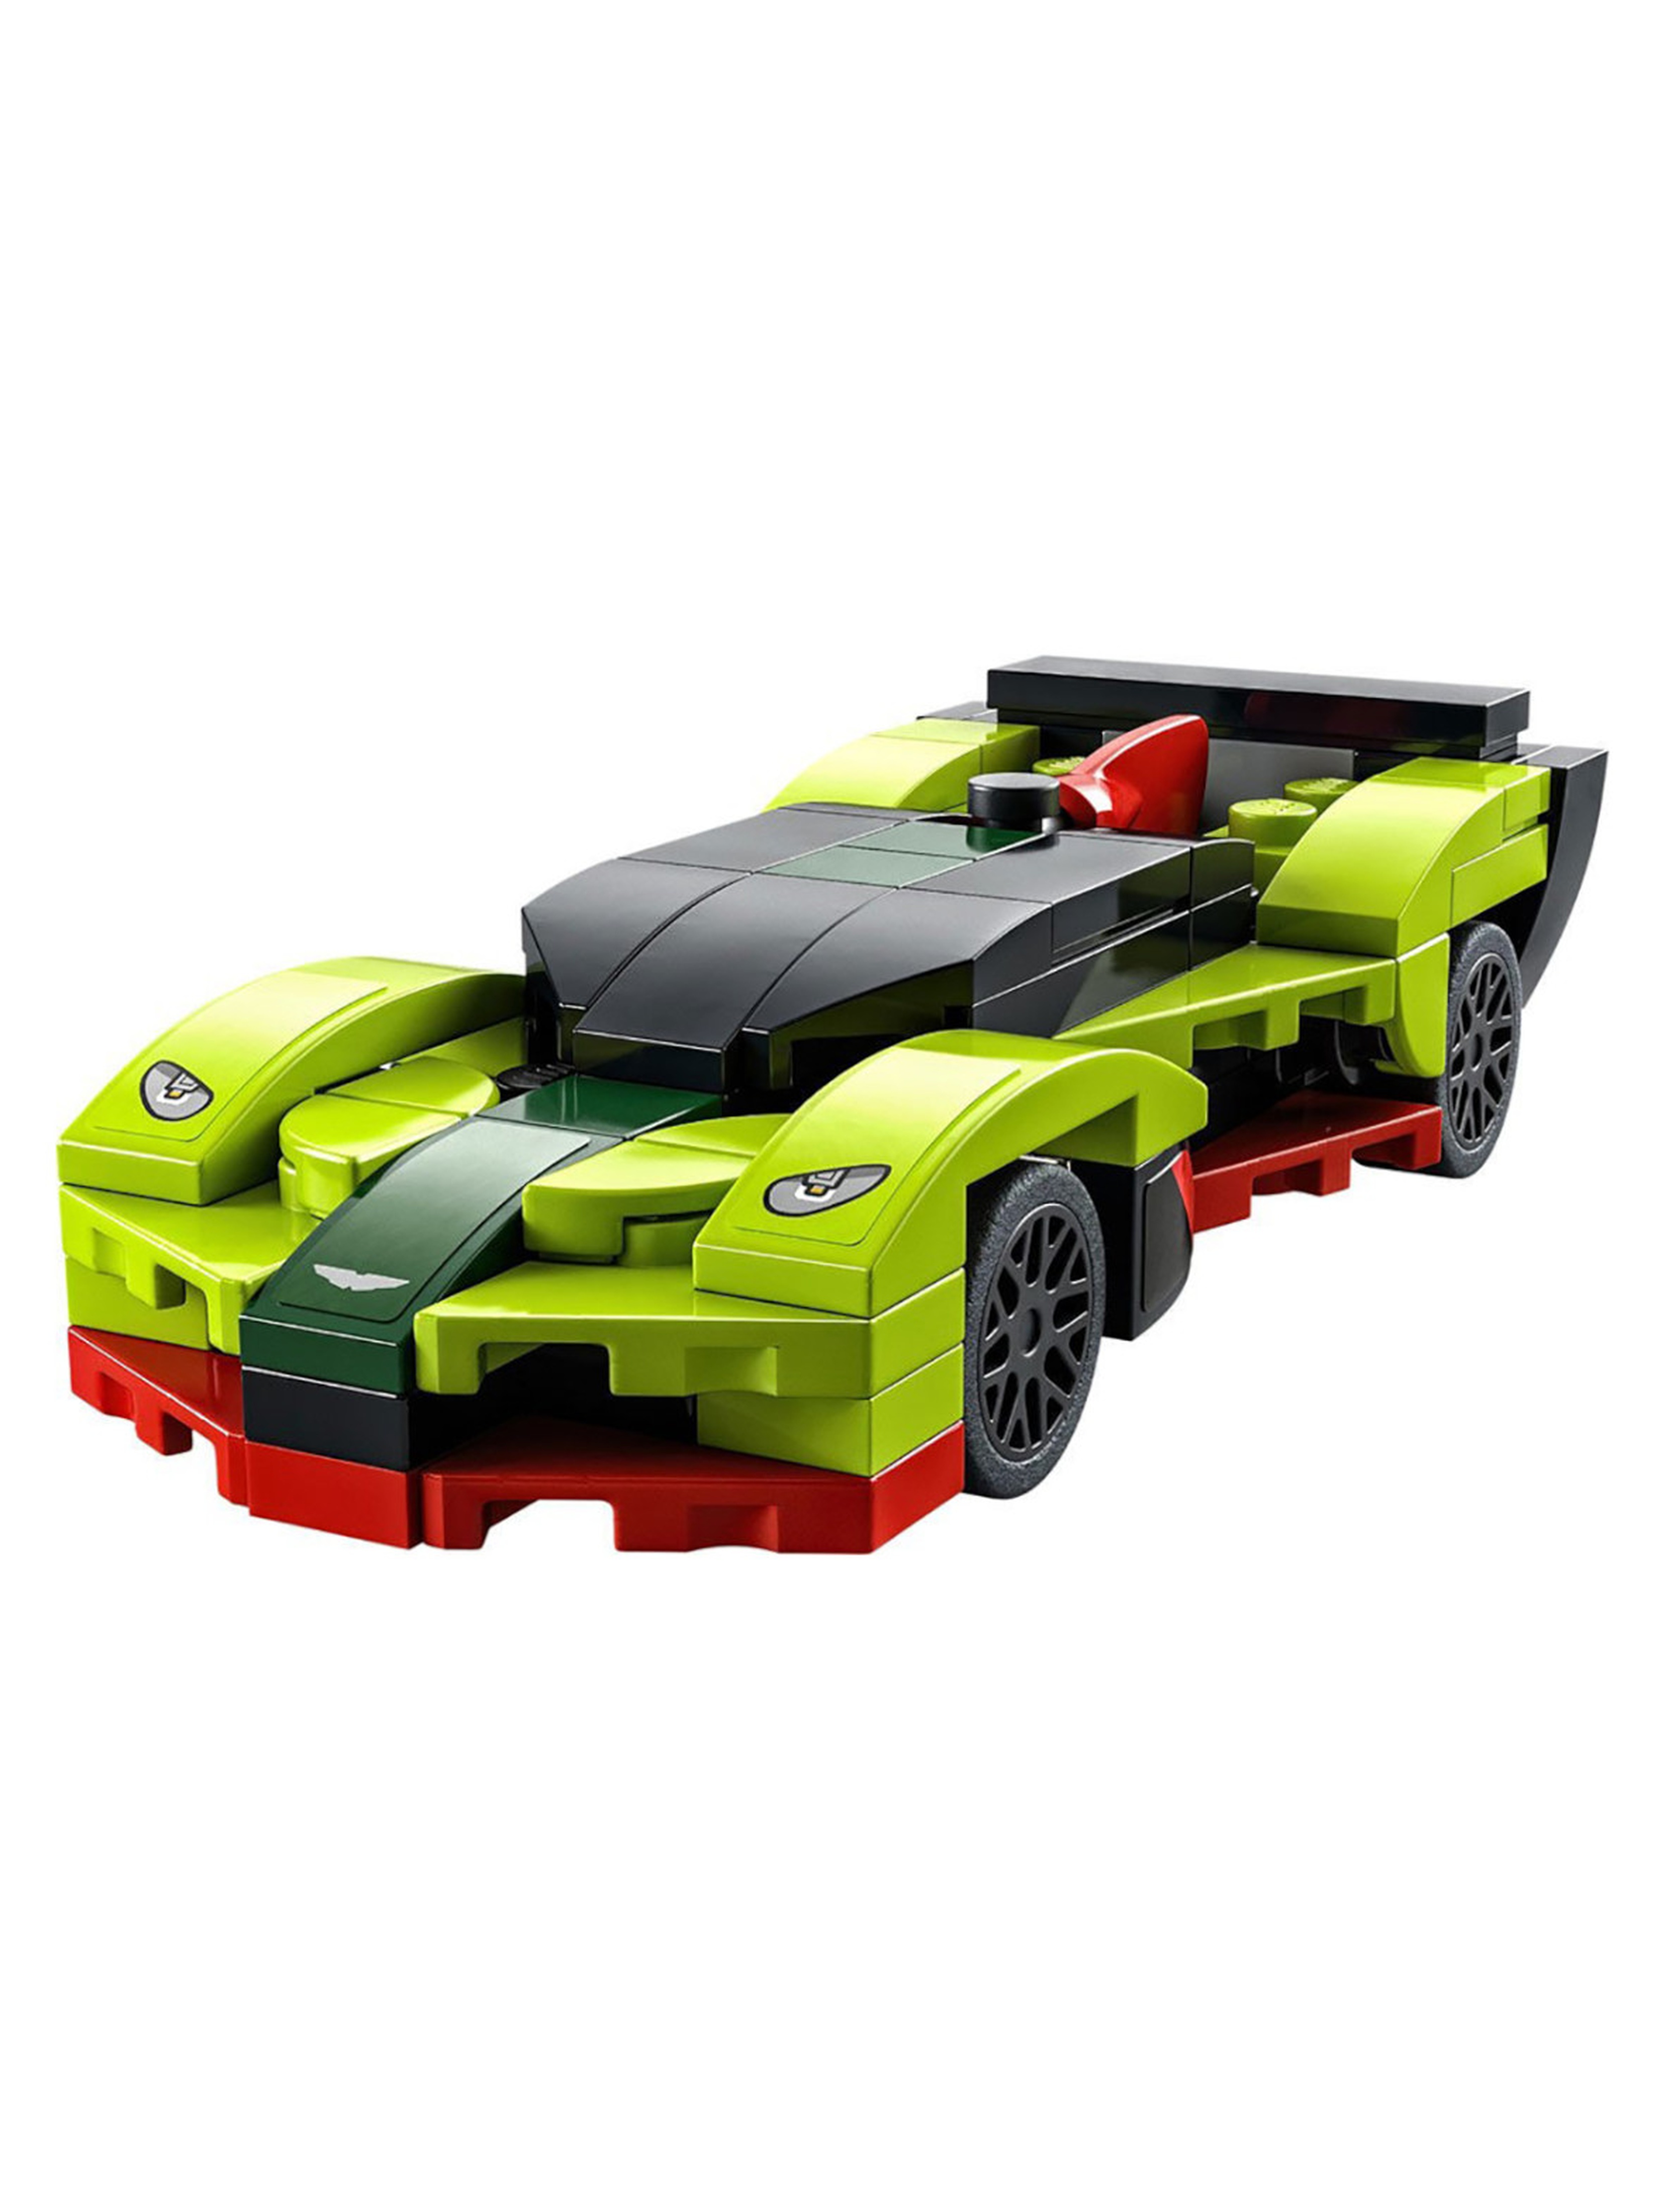 Klocki LEGO Speed Champions 30434 Aston Martin Valkyrie AMR Pro- 97 elementów, wiek 6 +